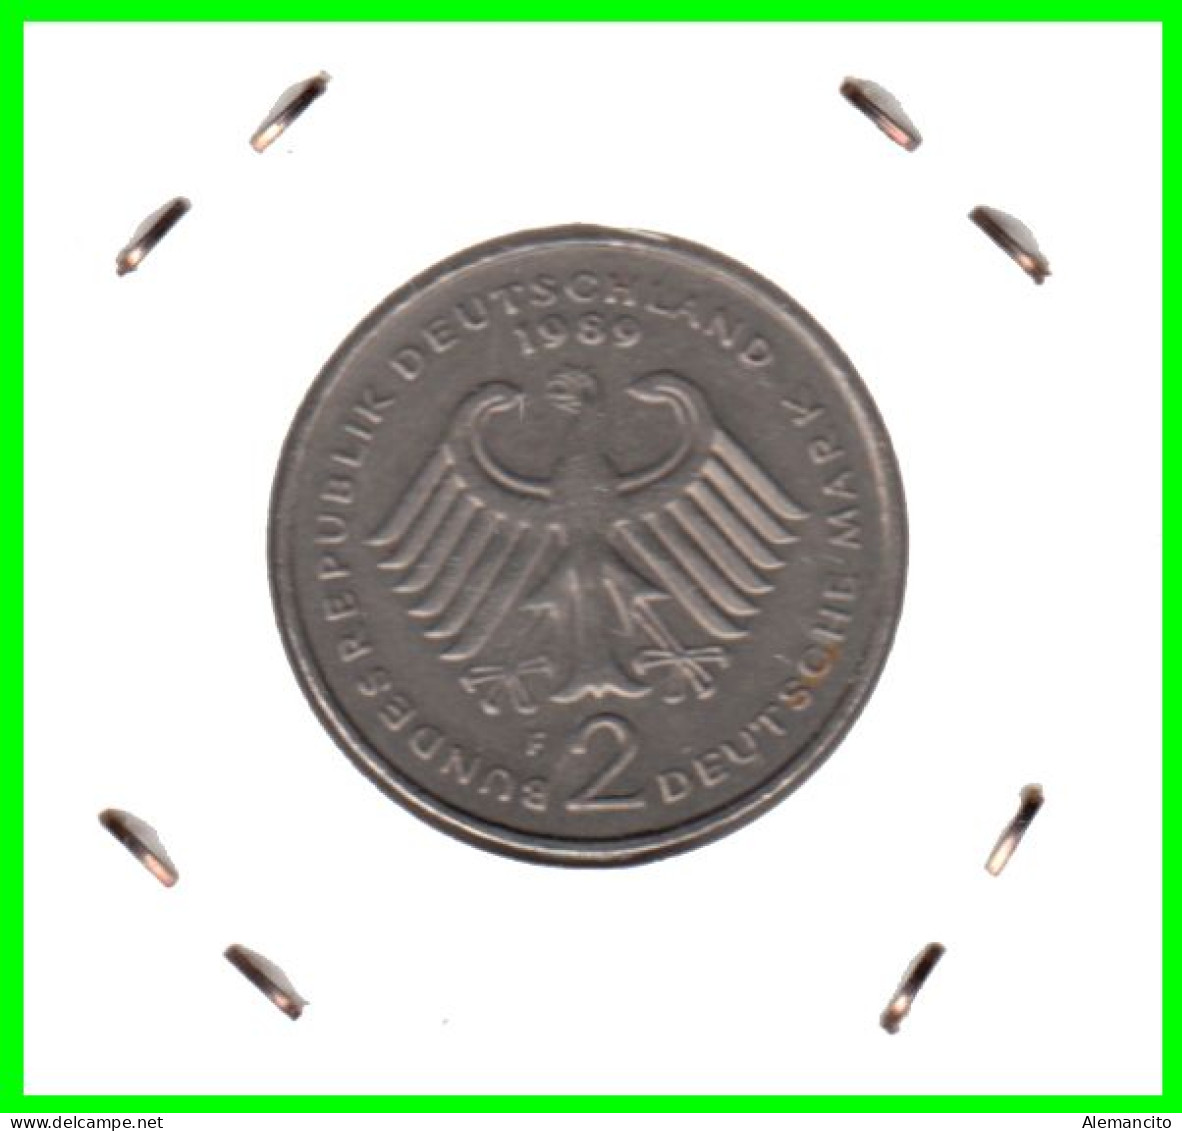 COIN ALEMANIA ( GERMANY ) MONEDA DE 2.00 DM AÑO 1989 CECA-F - STTUCART -LUDWIG ERHARD - NÍQUEL - 2 Mark